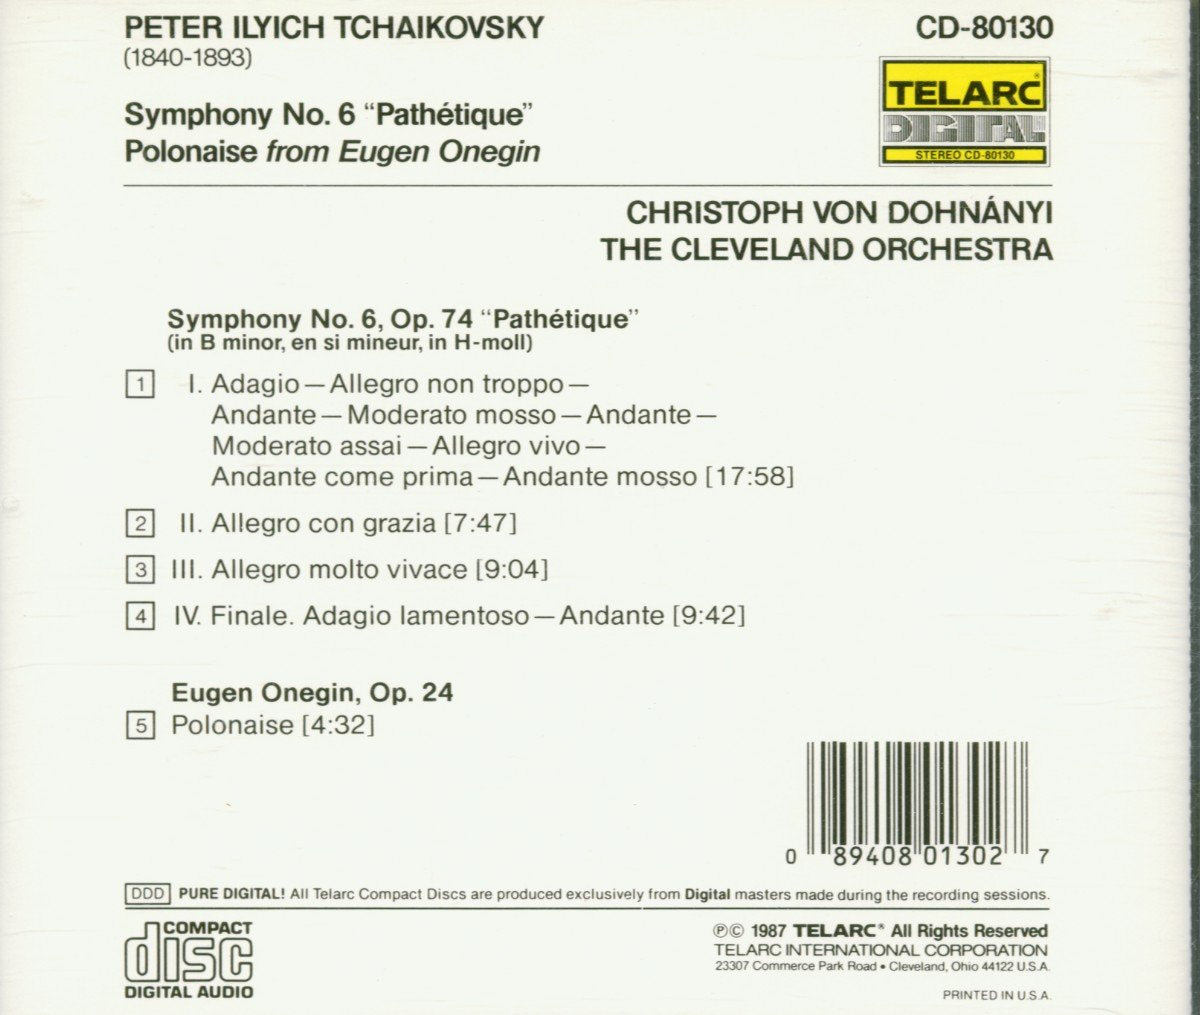 TCHAIKOVSKY: SYMPHONY No. 6 "PATHETIQUE" - Christoph von Dohnanyi, Cleveland Orchestra